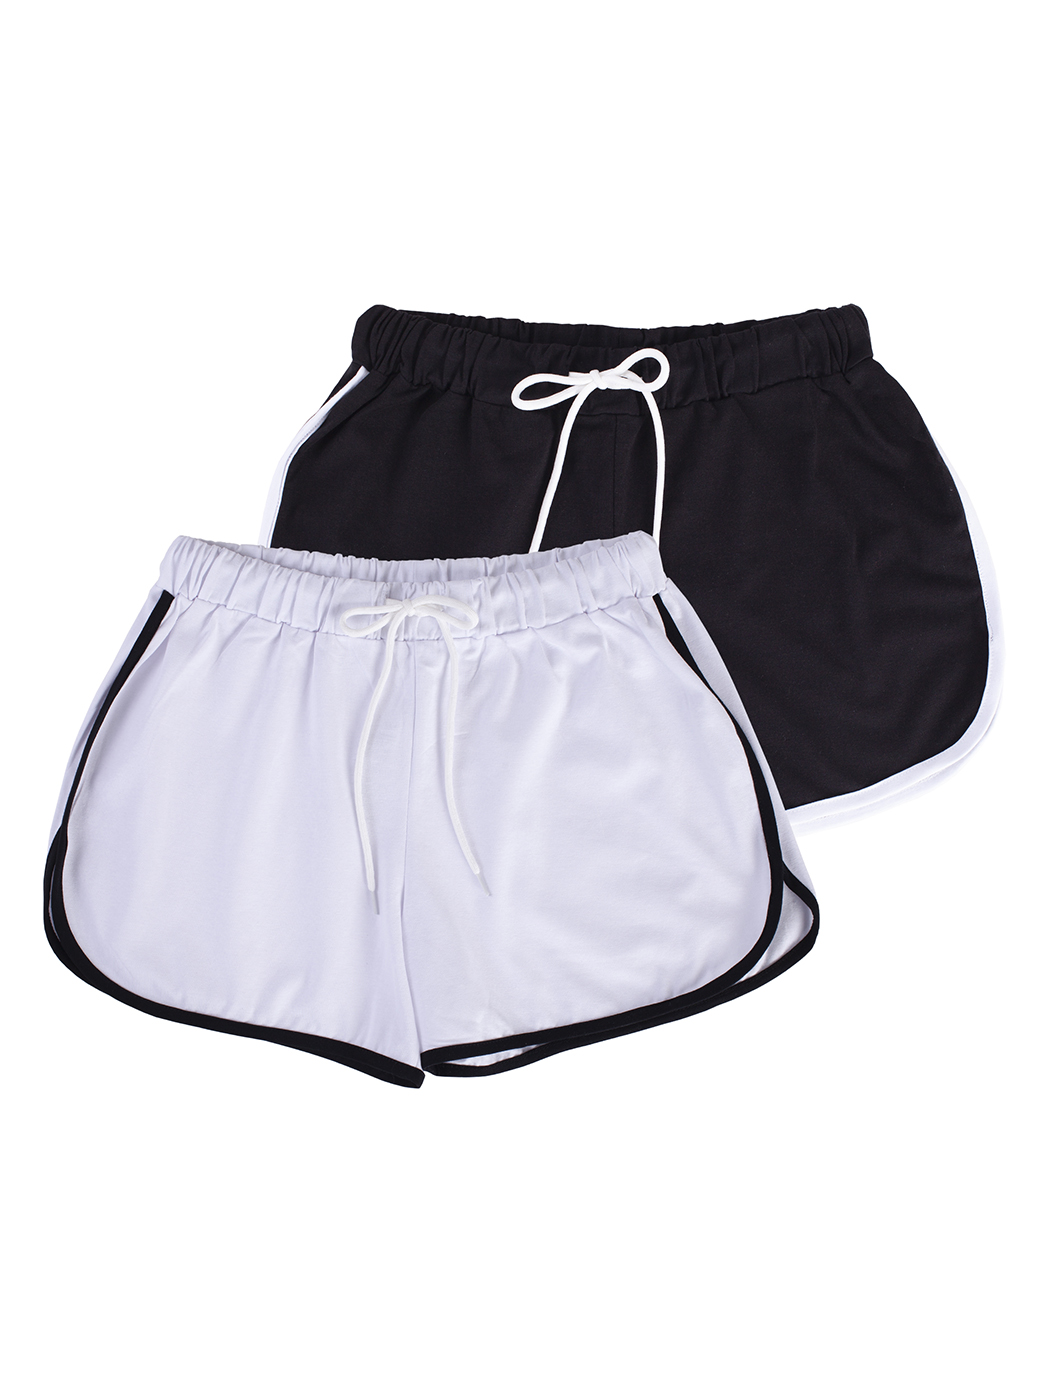 Cпортивные шорты женские Lunarable ksrt002-2_ черные XL